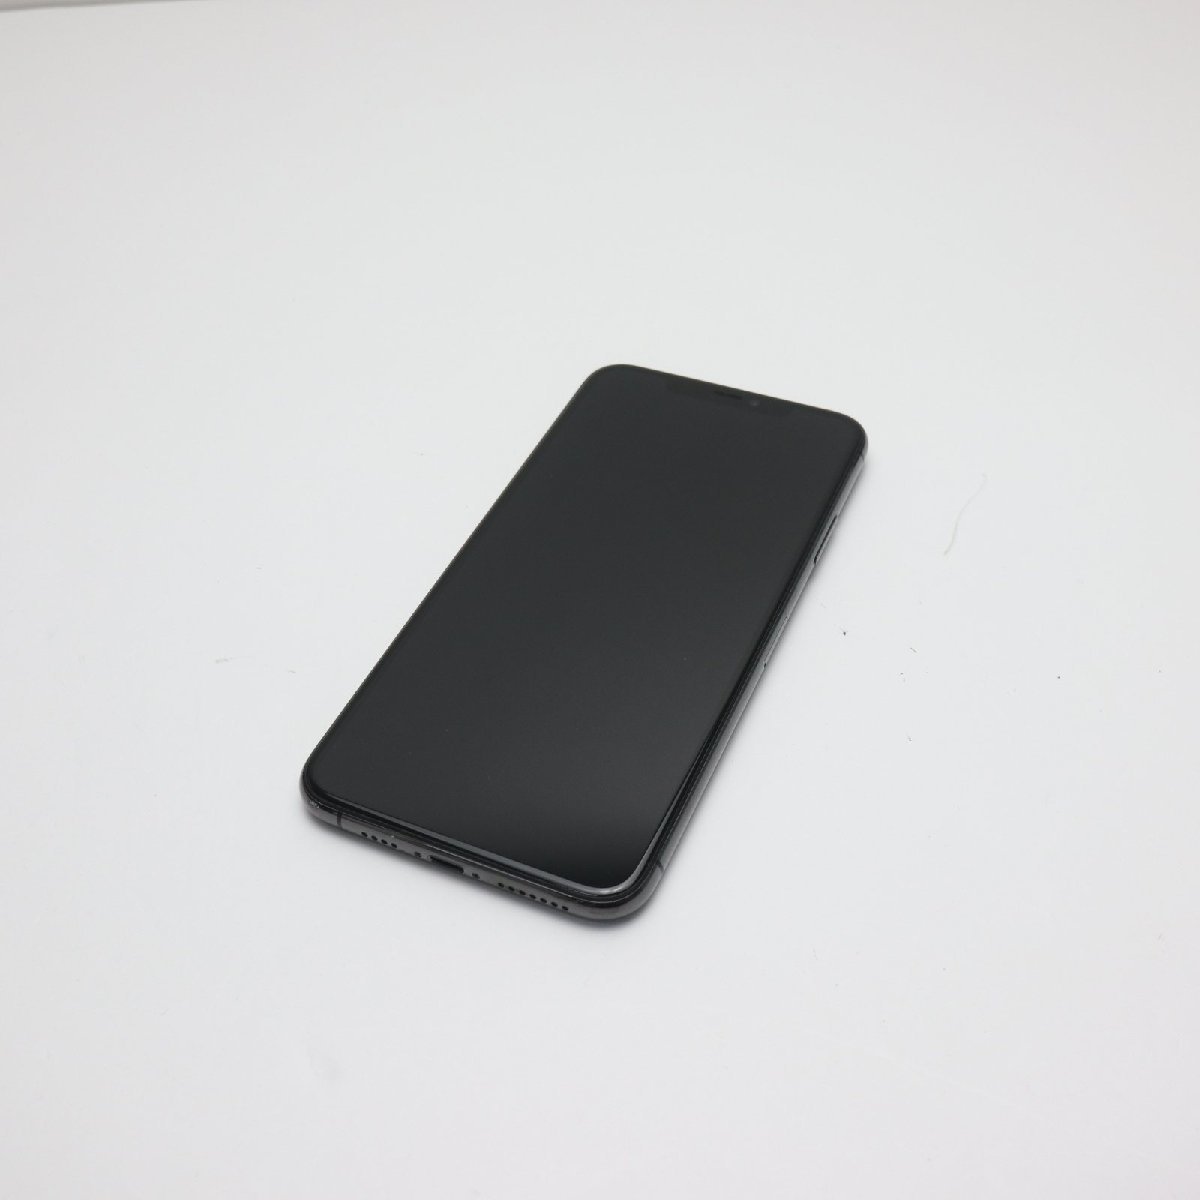 新品同様 SIMフリー iPhone 11 Pro 256GB スペースグレイ スマホ 本体